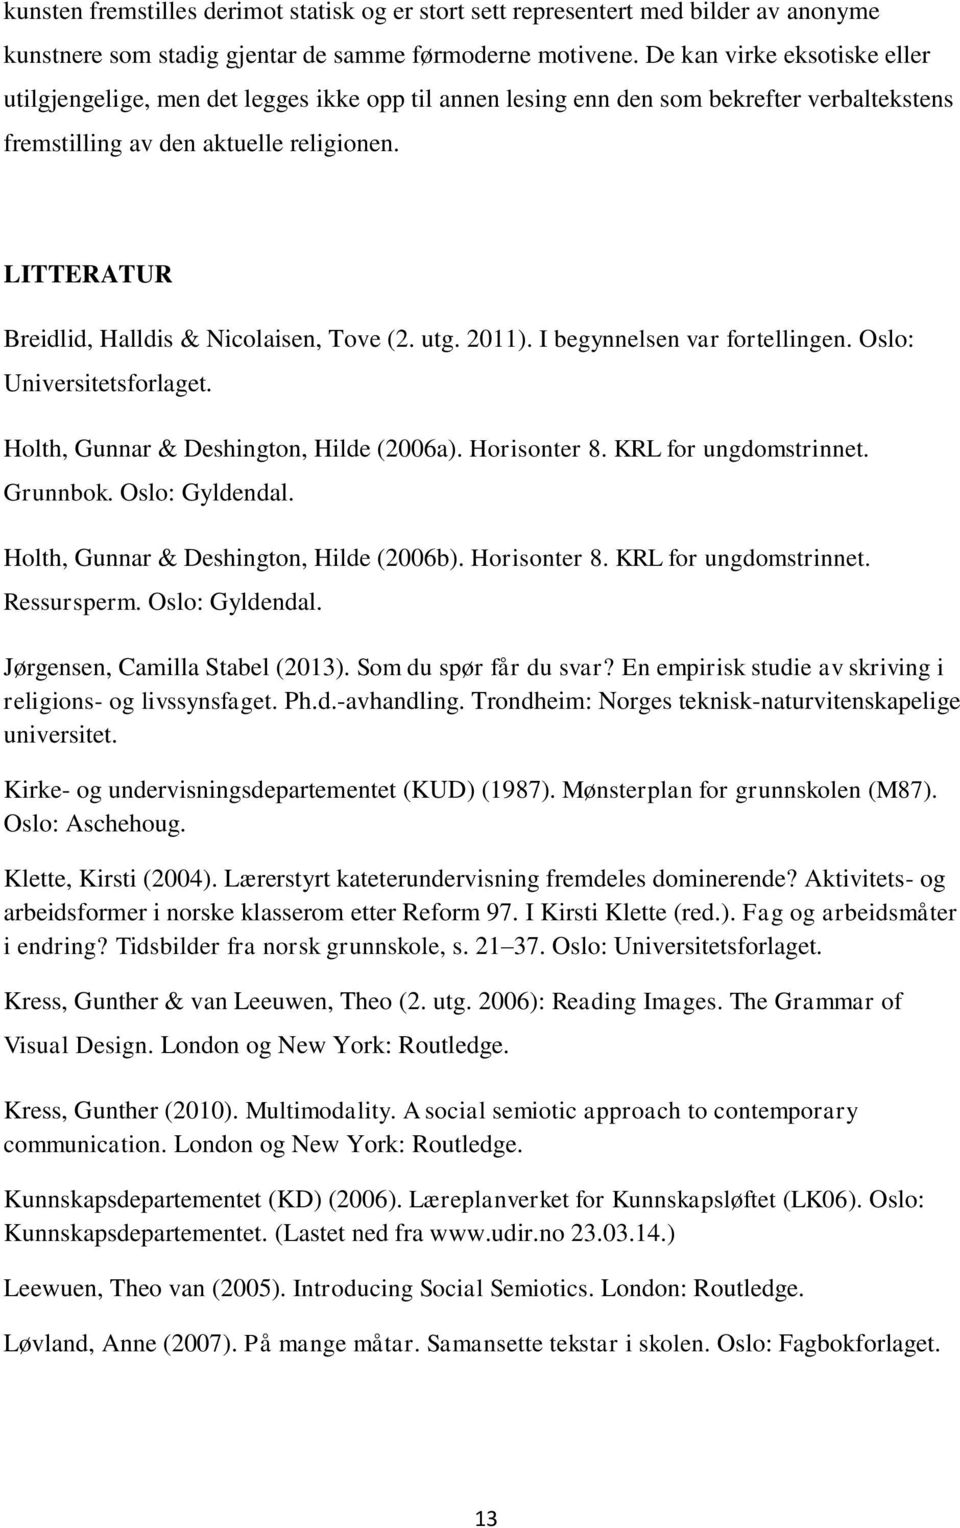 LITTERATUR Breidlid, Halldis & Nicolaisen, Tove (2. utg. 2011). I begynnelsen var fortellingen. Oslo: Universitetsforlaget. Holth, Gunnar & Deshington, Hilde (2006a). Horisonter 8.